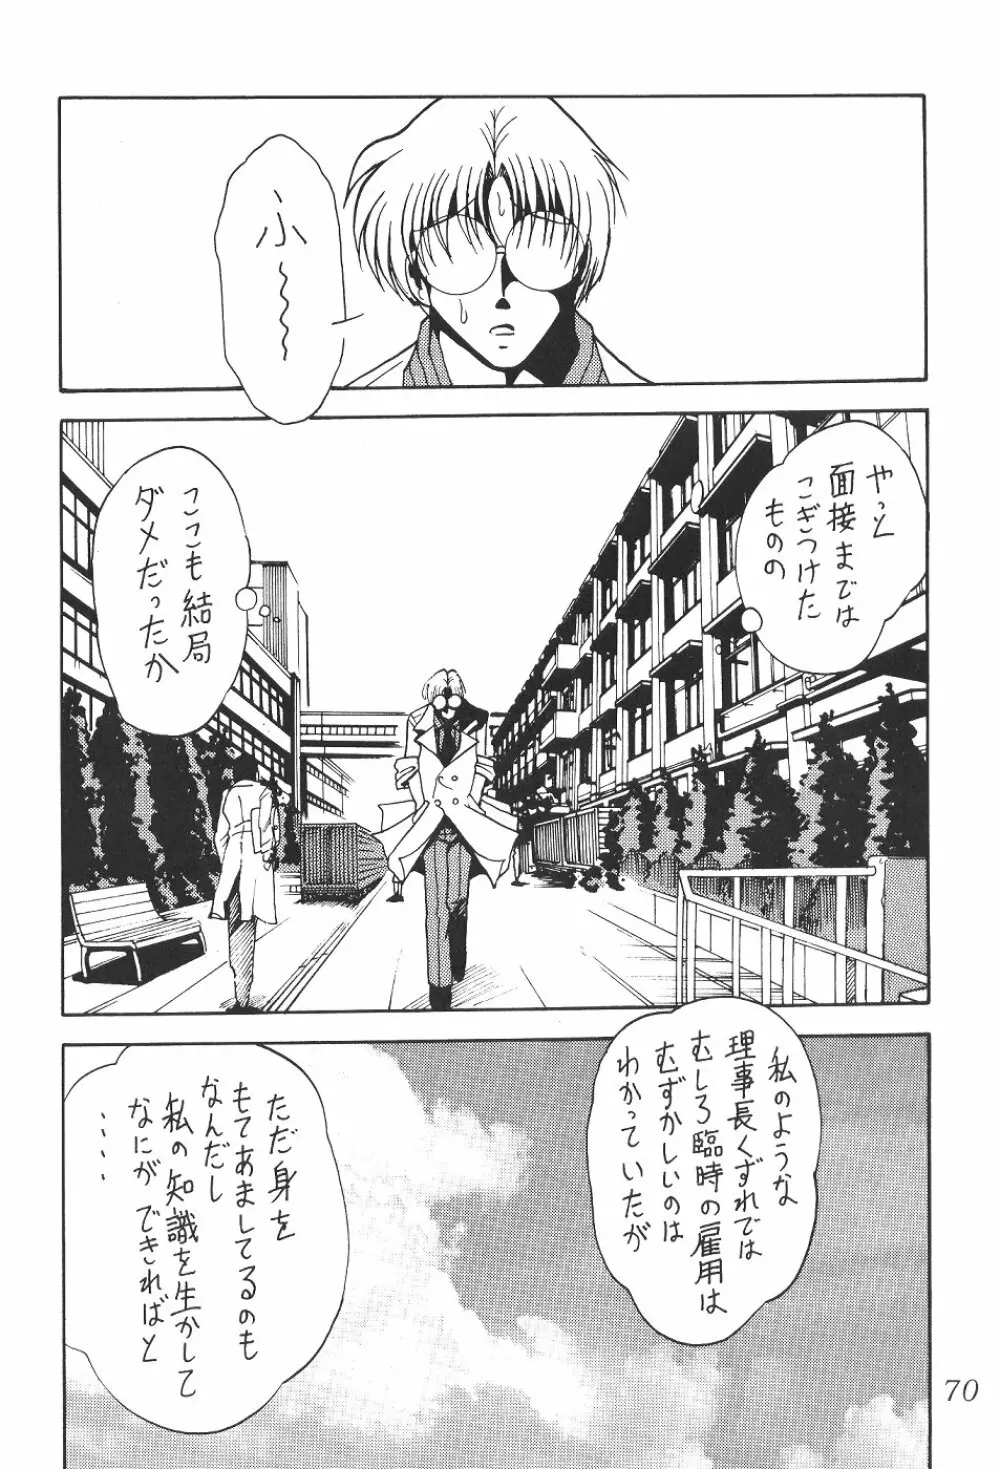 サイレント・サターン SS vol.4 71ページ